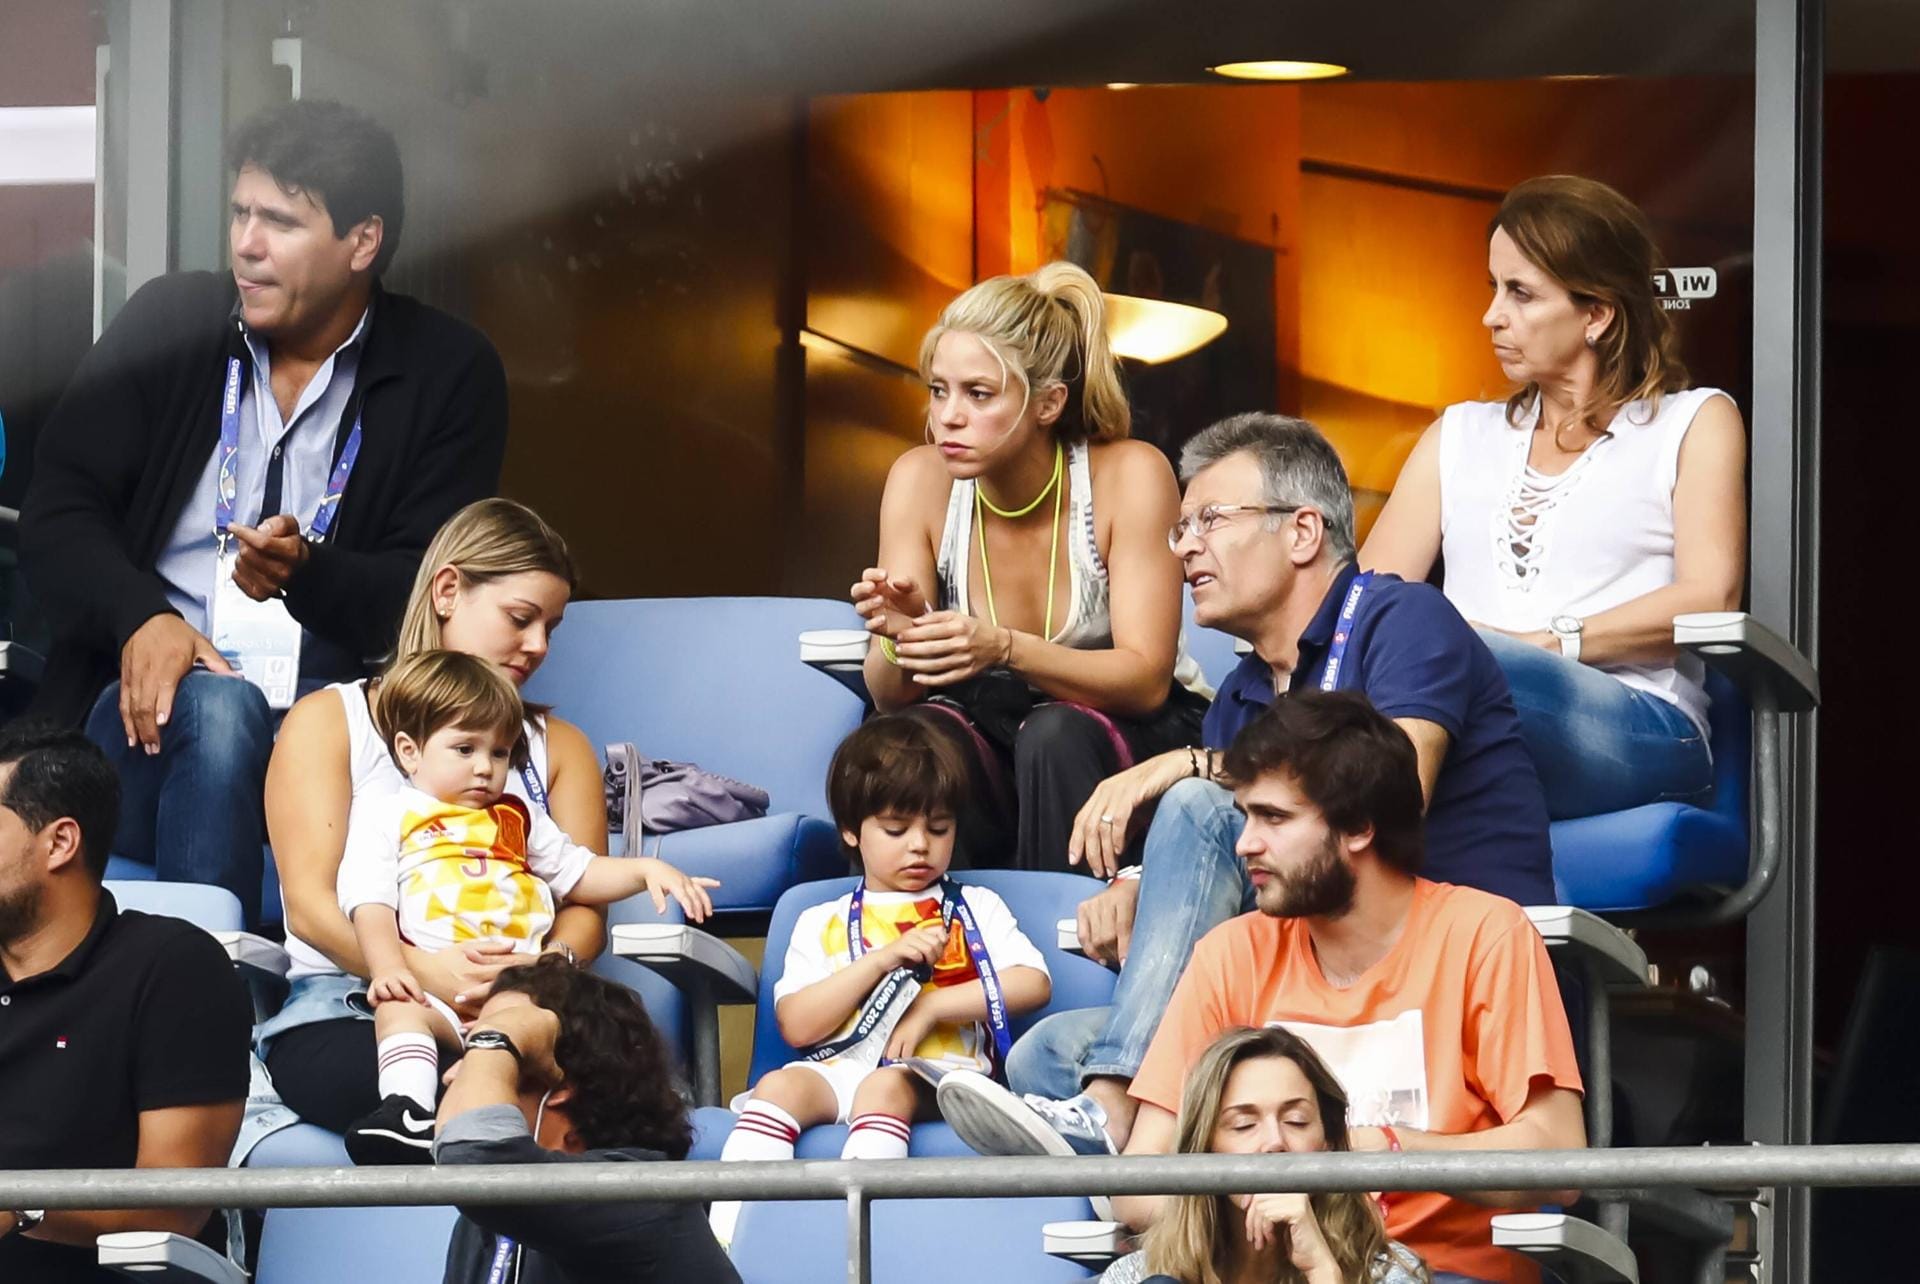 Die Söhne Sasha (li.) und Milan (re.) gucken ähnlich frustriert wie ihre Mutter. Rechts neben Shakira beäugen auch Piqués Eltern das Spielgeschehen kritisch.